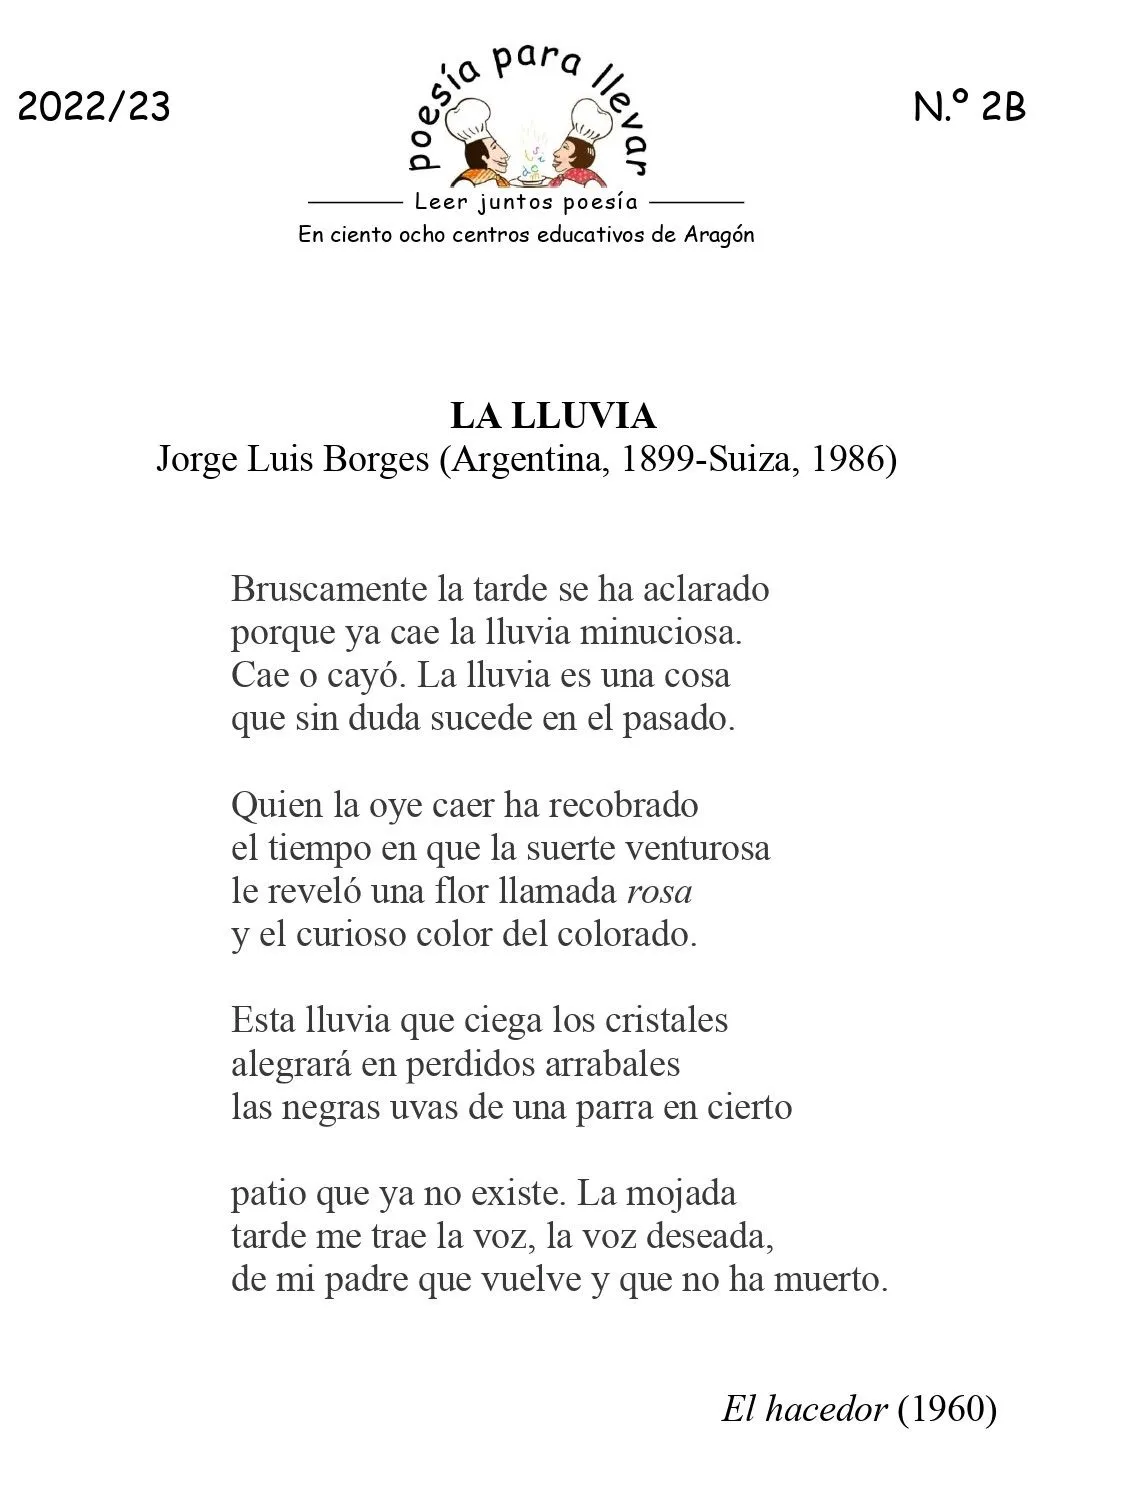 Poesía para Llevar: “La lluvia”, Jorge Luis Borges - CPEPA Concepción Arenal